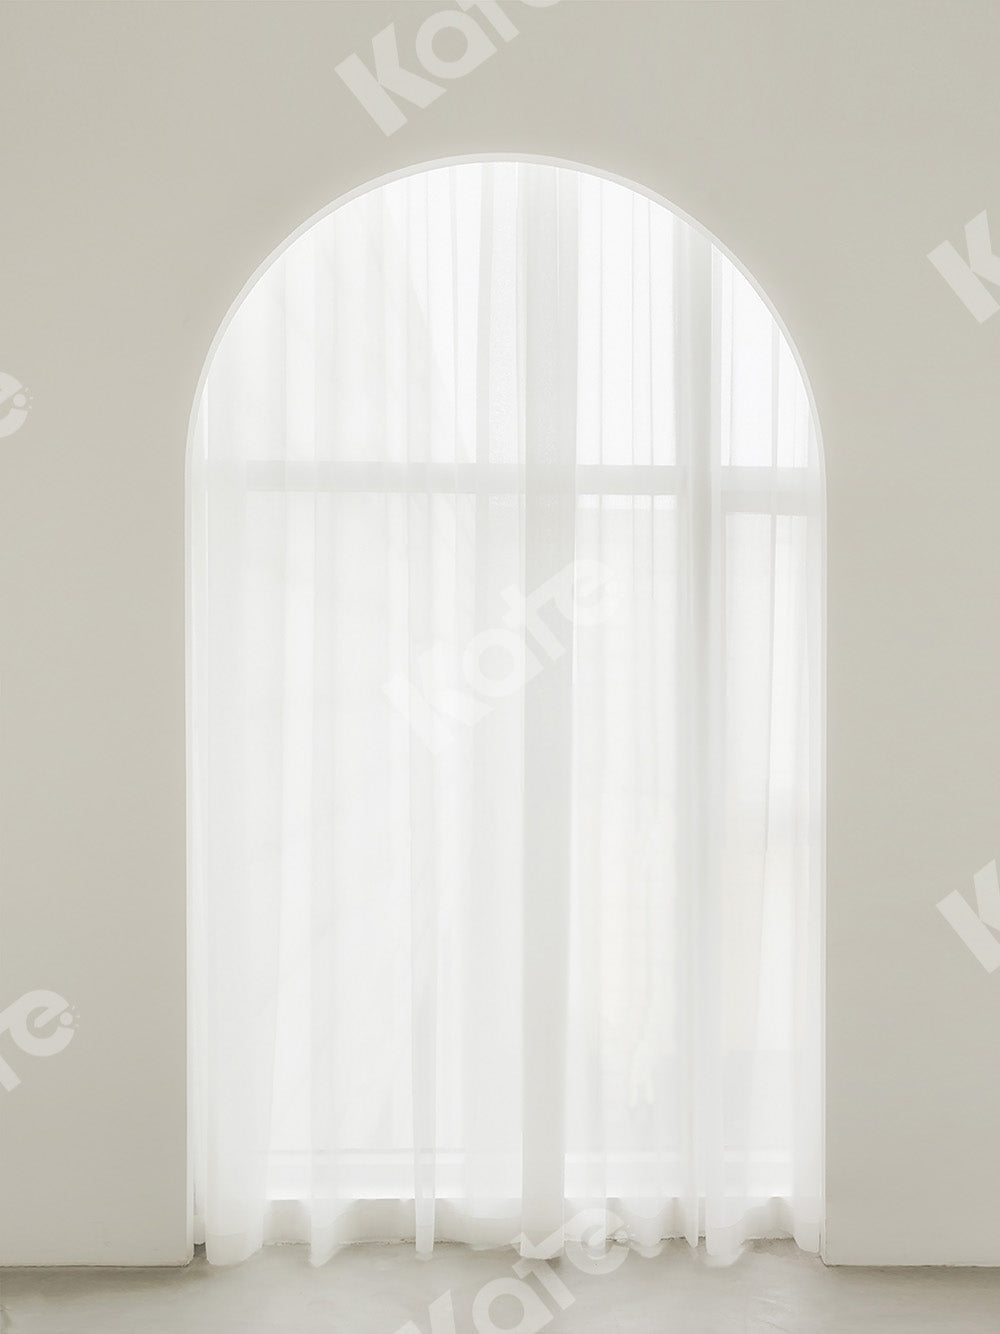 Kate Weißes Fenster mit Innenhintergrund Entworfen von Jia Chan Photography